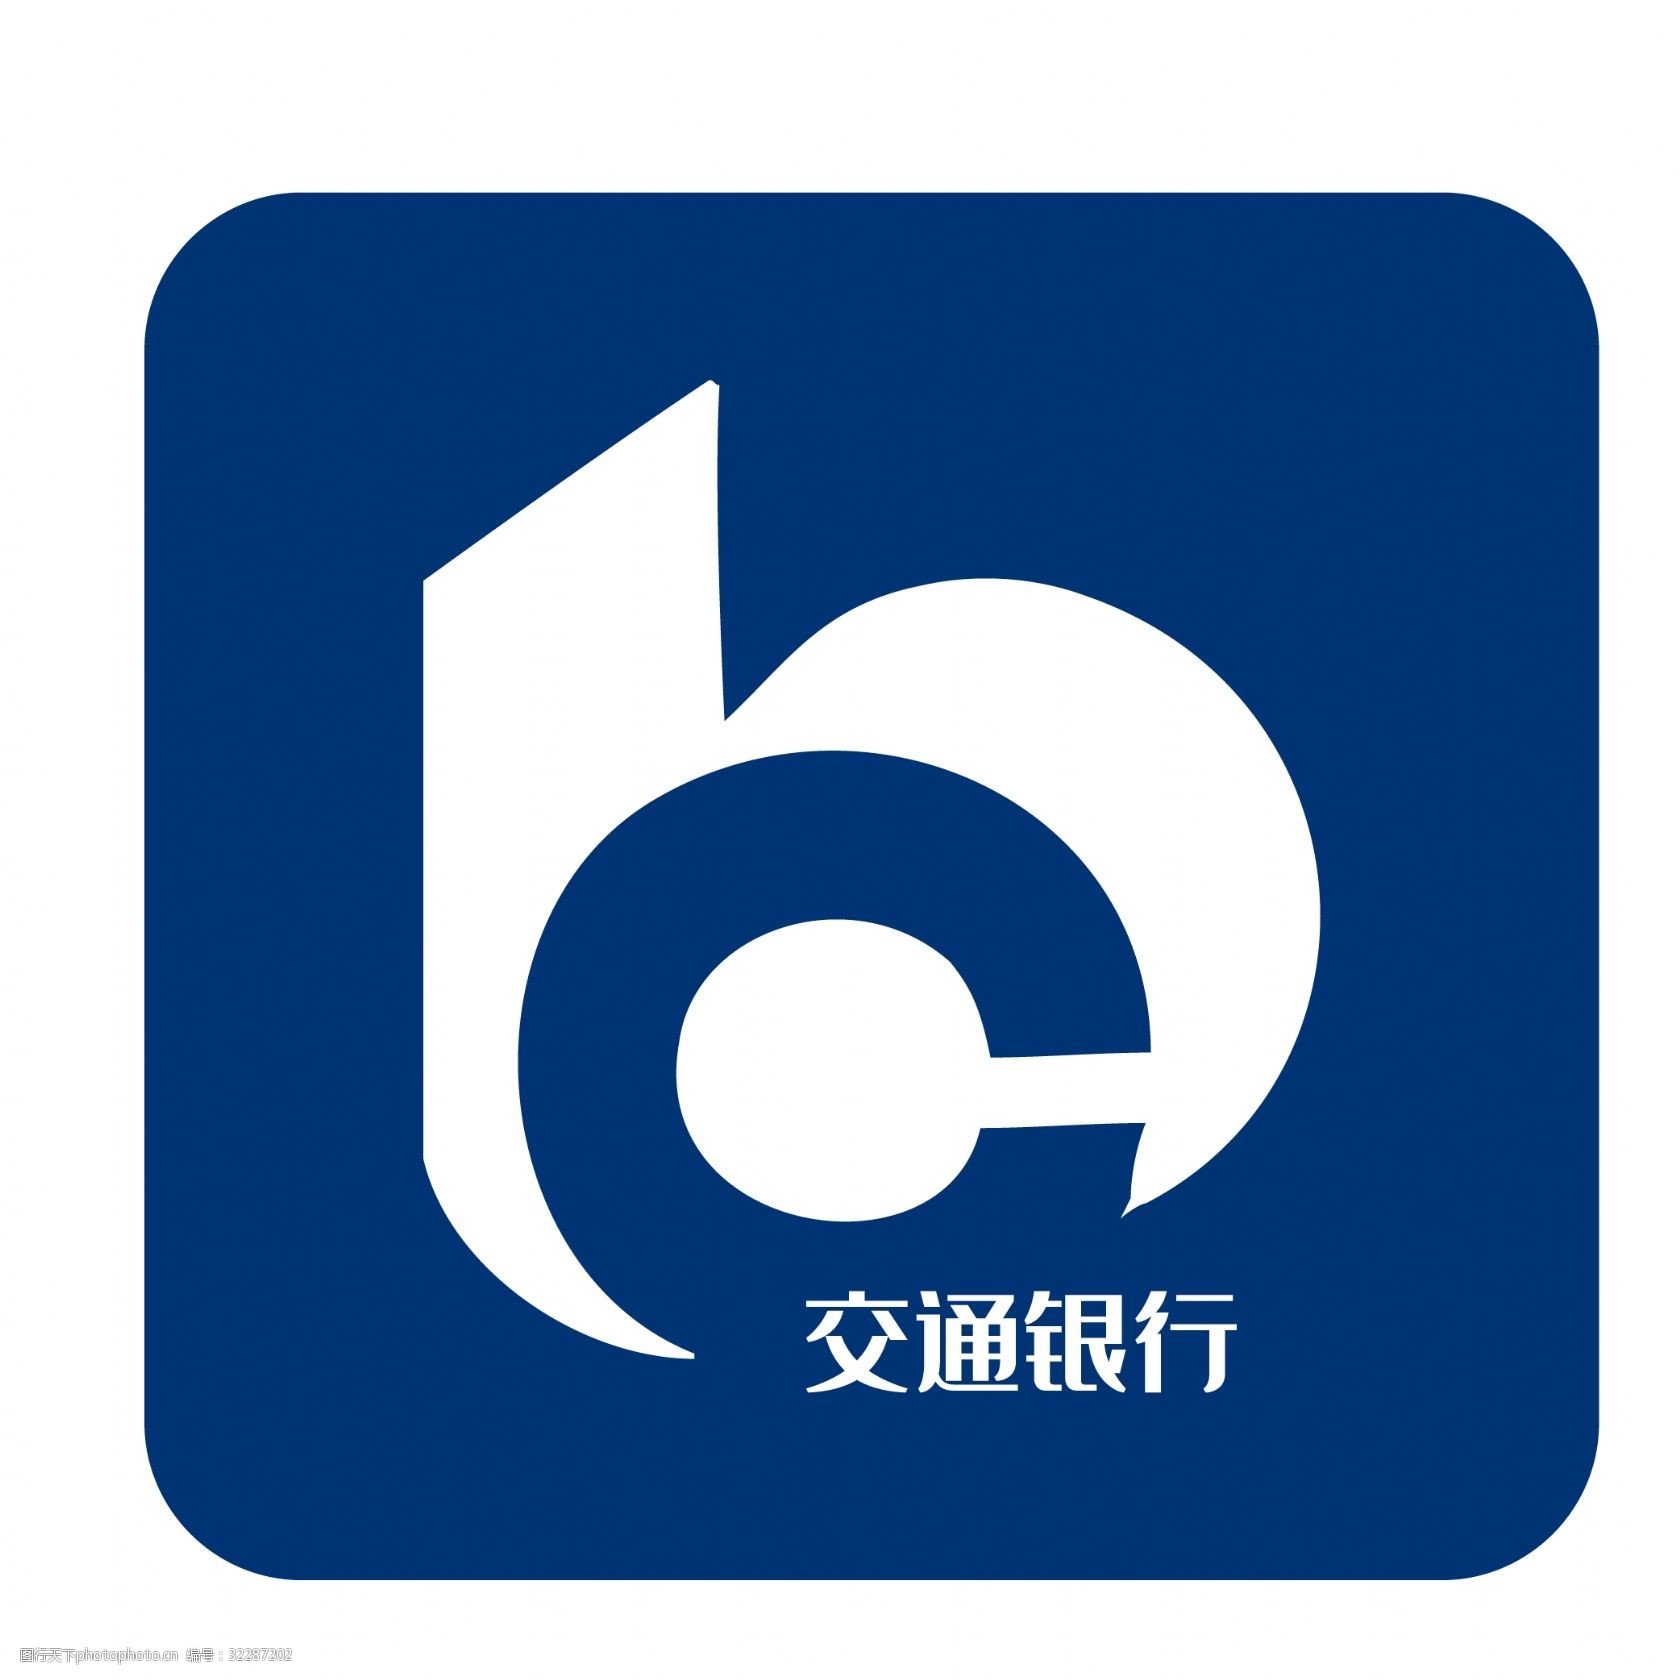 蓝色矩形交通银行logo图标